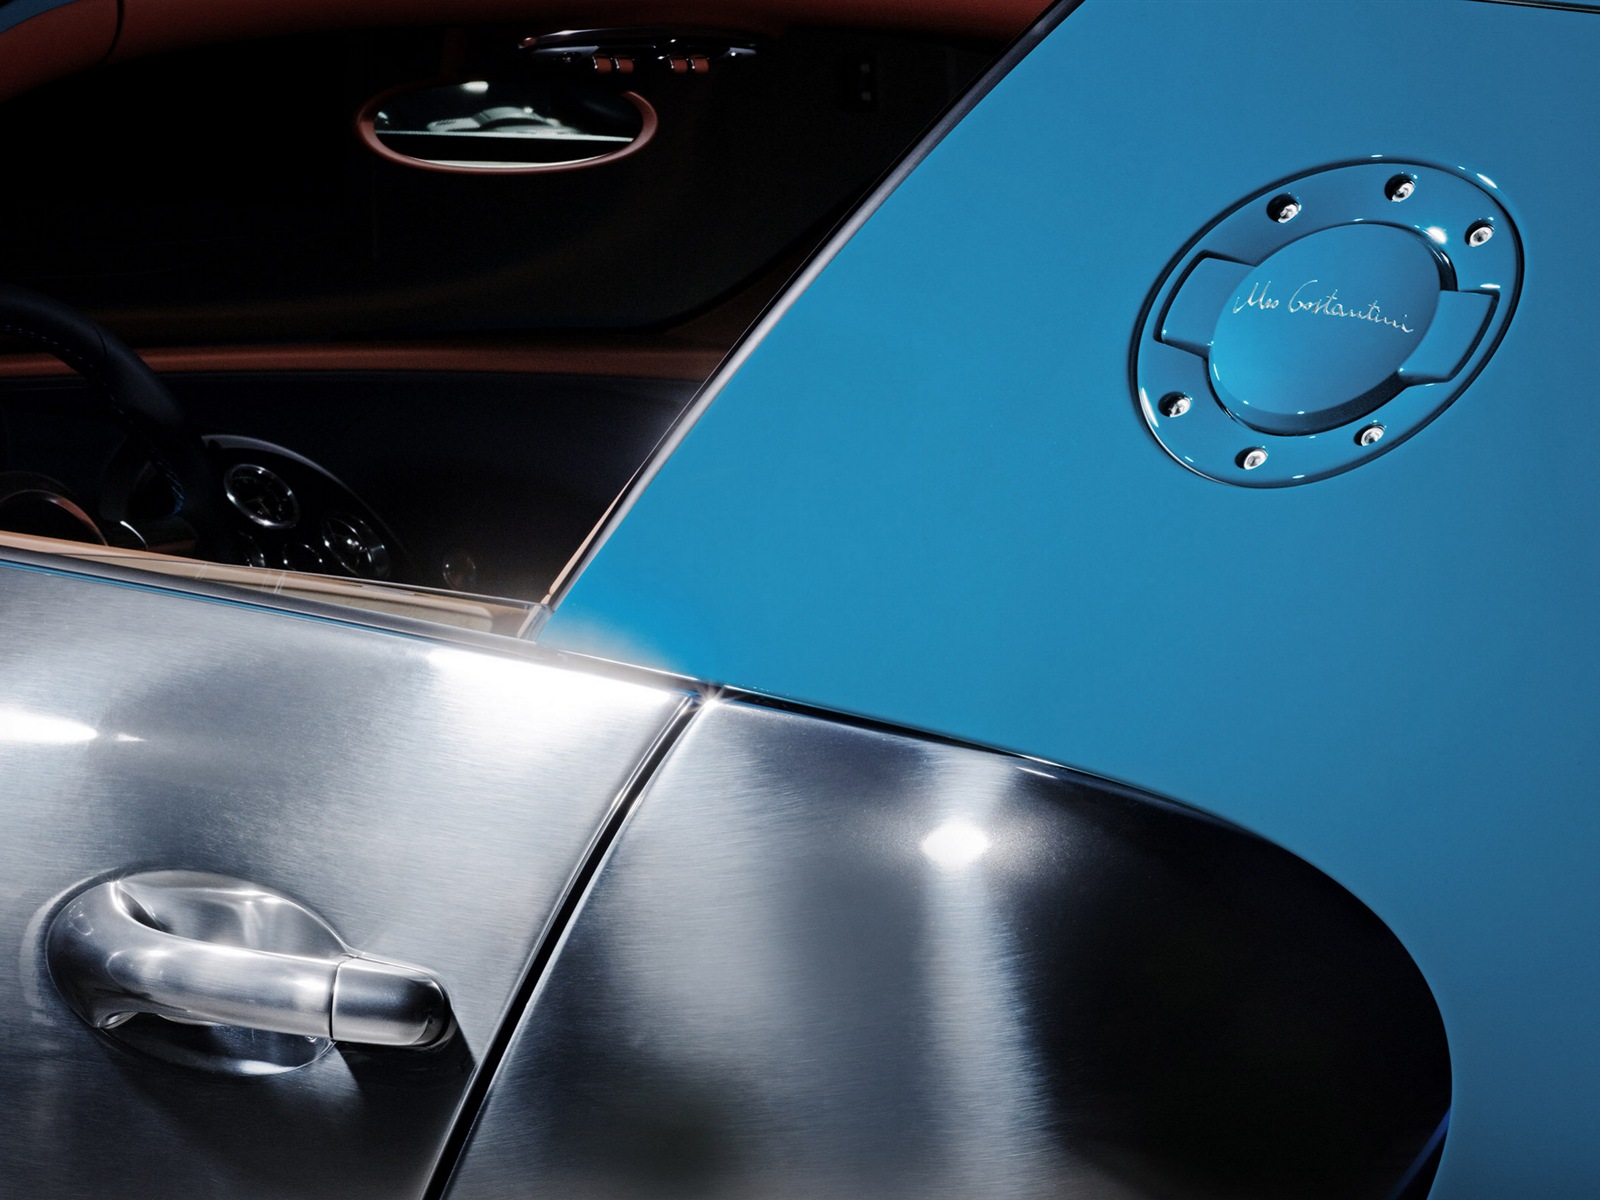 2013 Bugatti Veyron 16.4 Grand Sport Vitesse supercar fondos de pantalla de alta definición #4 - 1600x1200